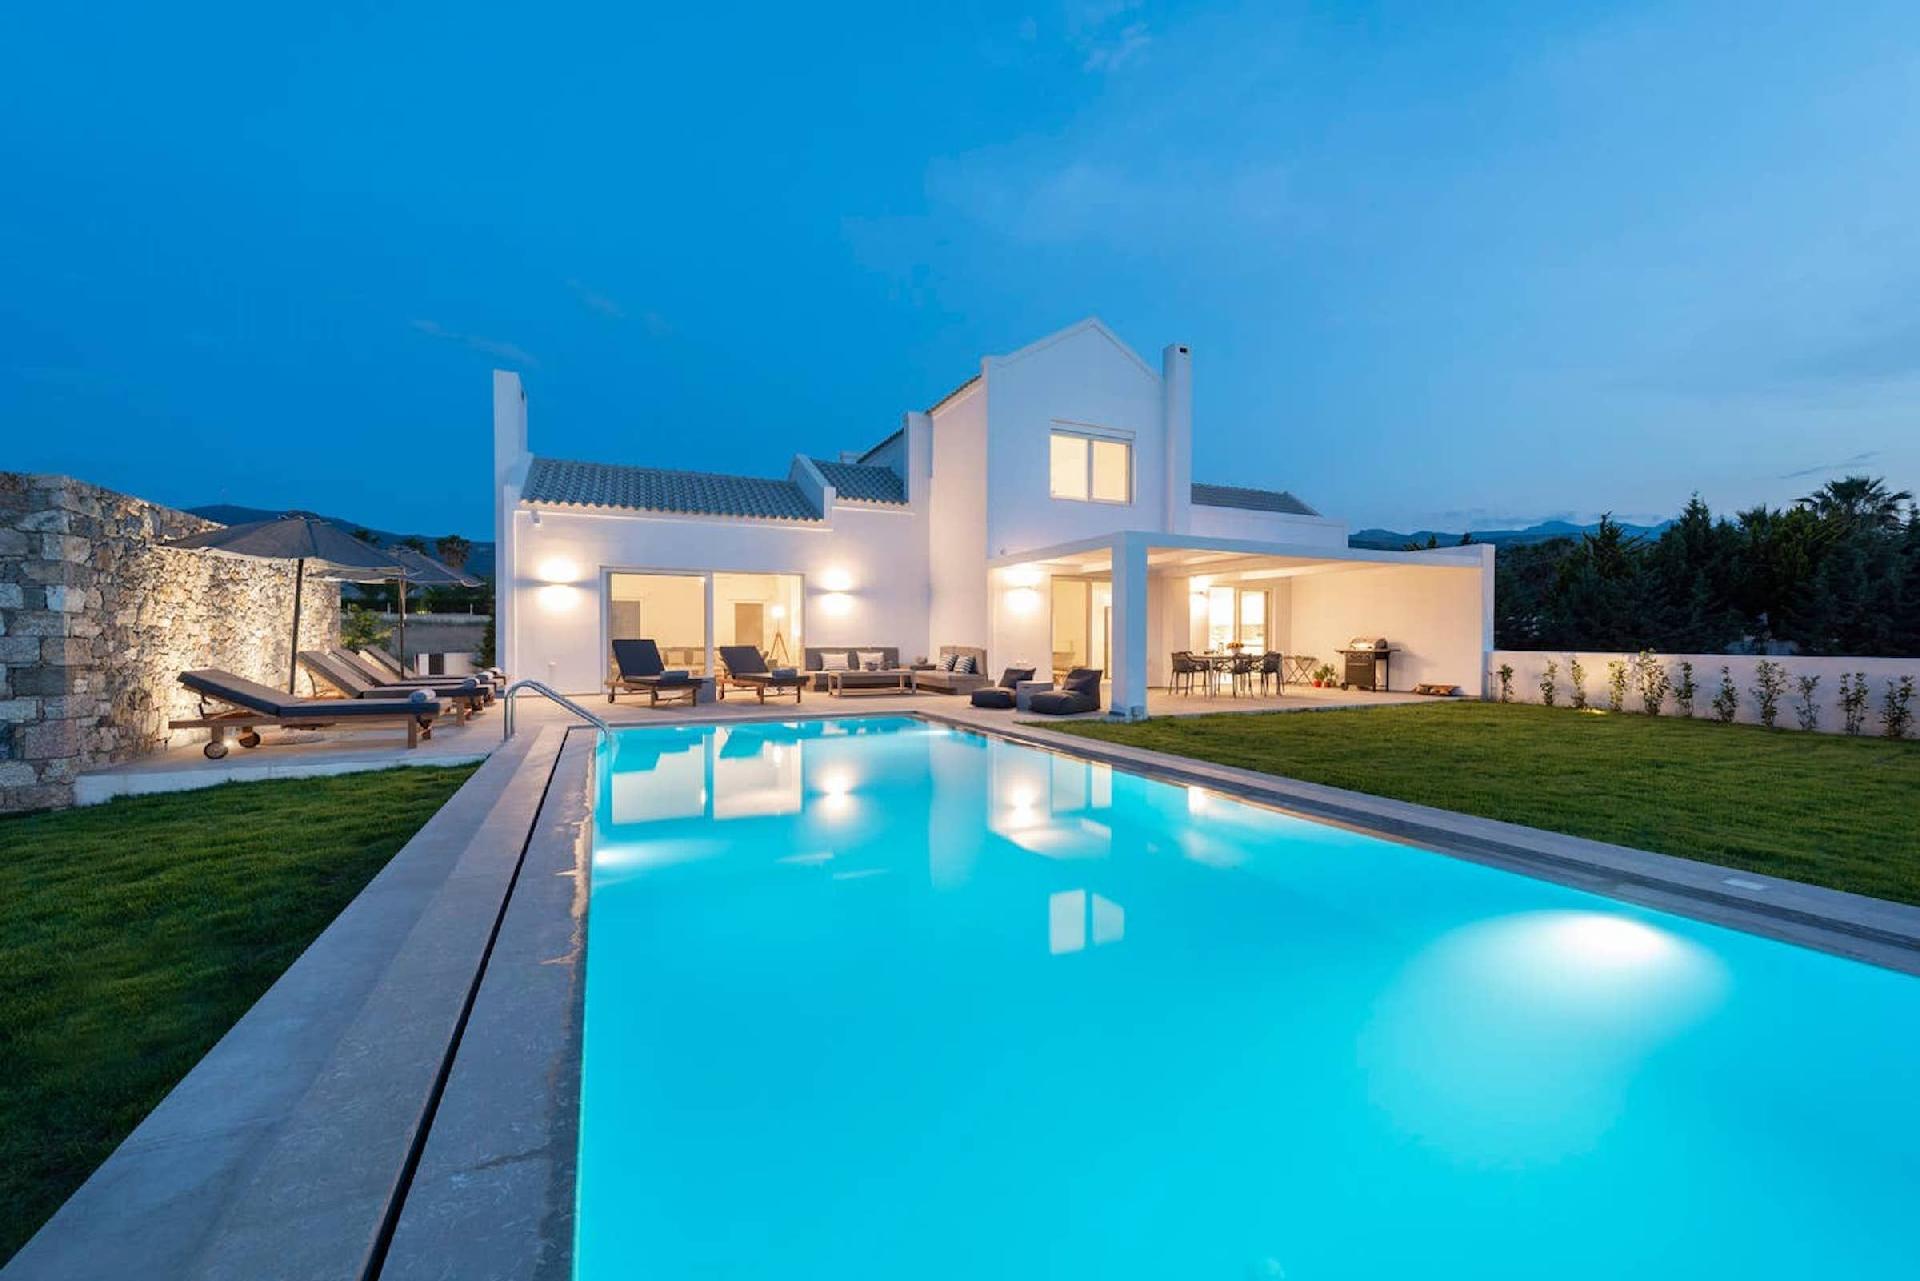 Ferienhaus mit Privatpool für 8 Personen ca.  Ferienhaus in Griechenland